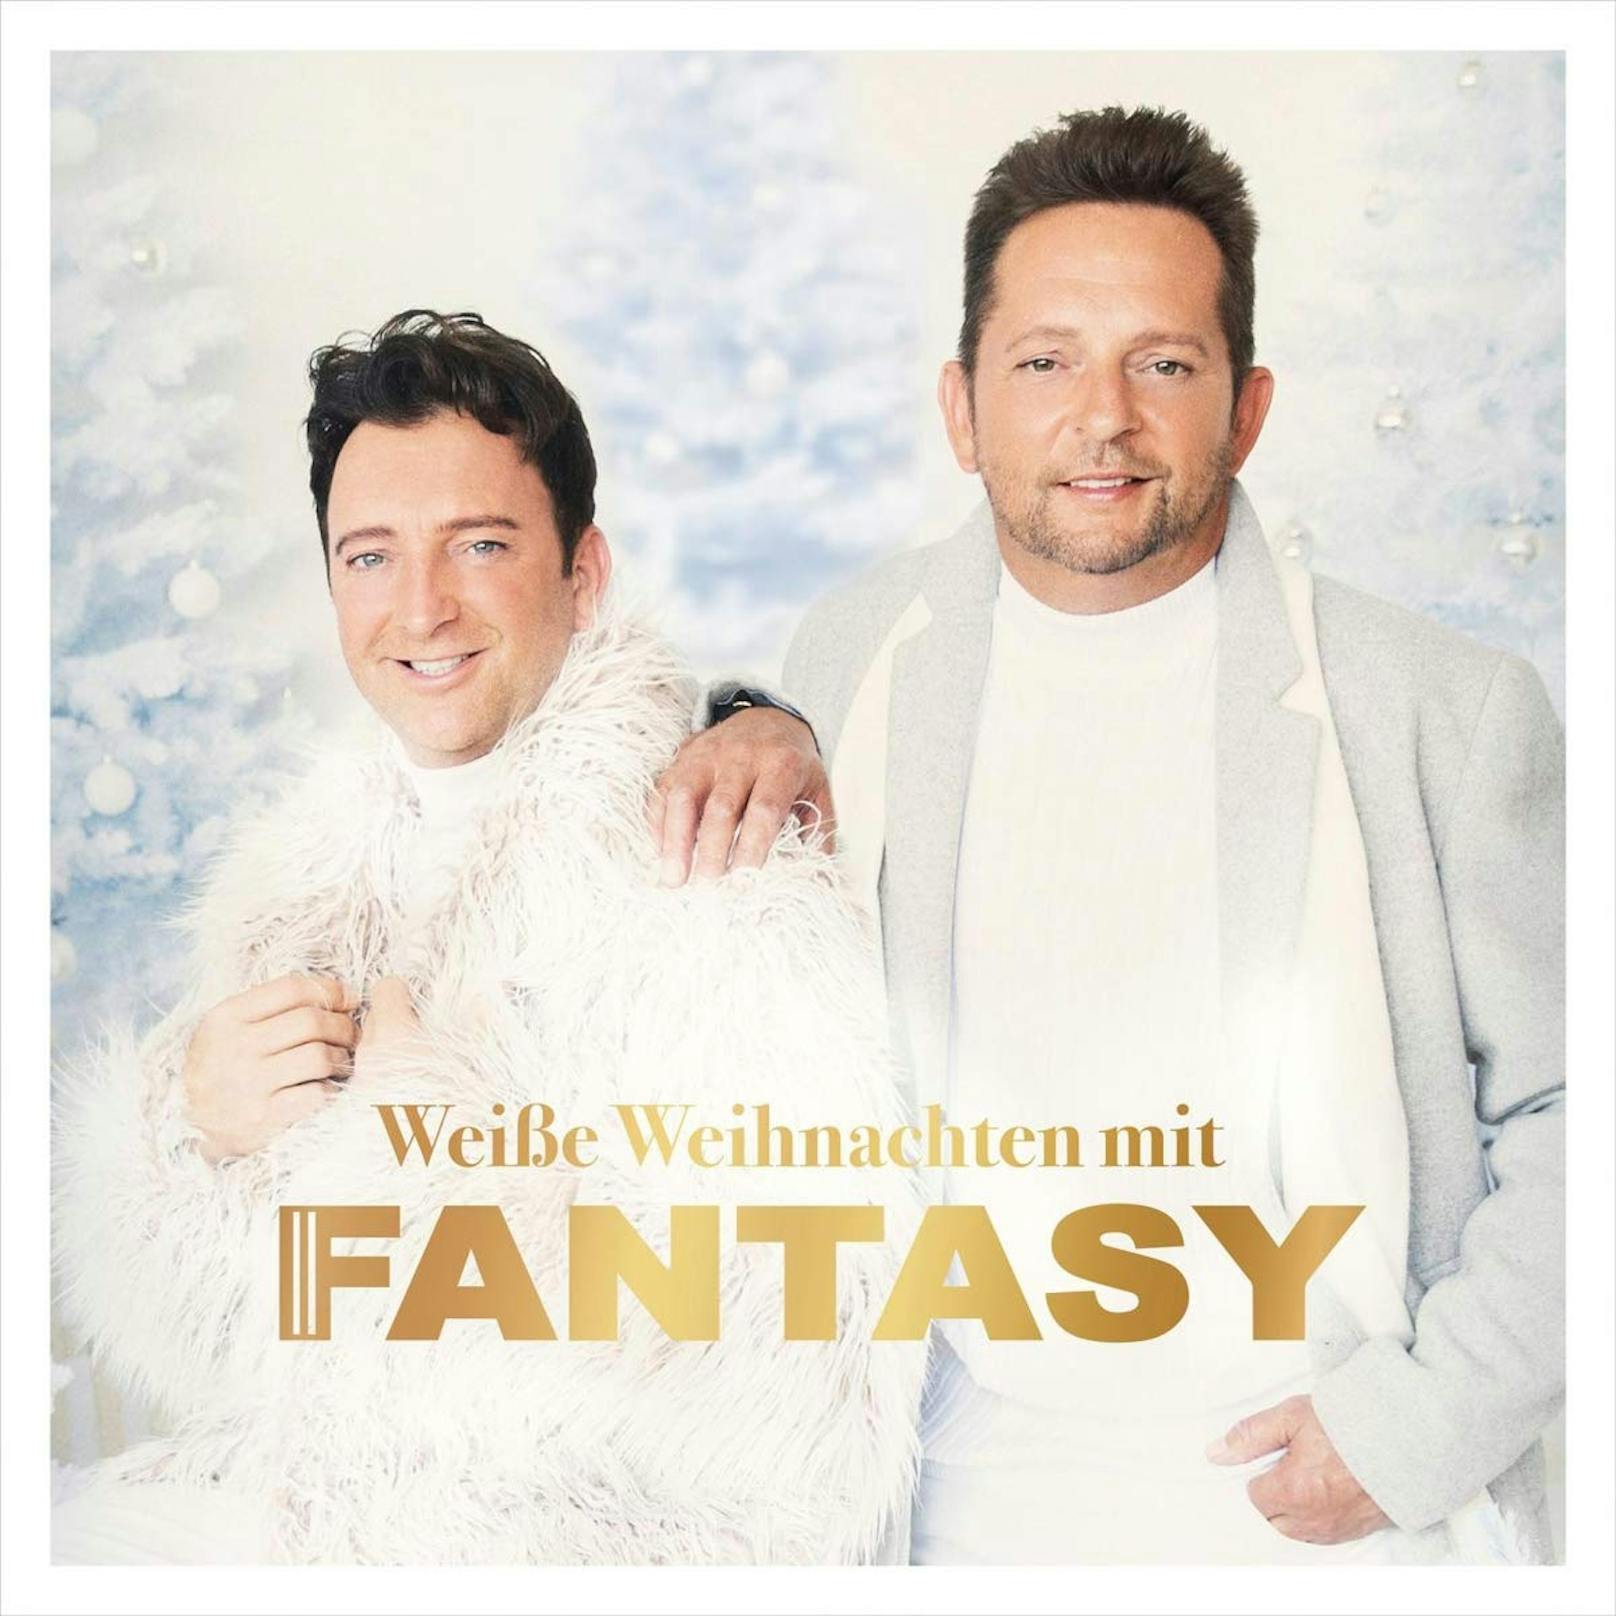 2021 veröffentlichten Fantasy ihre Version von "Last Christmas" – ein wenig wie Wham! sehen die beiden ja schon aus